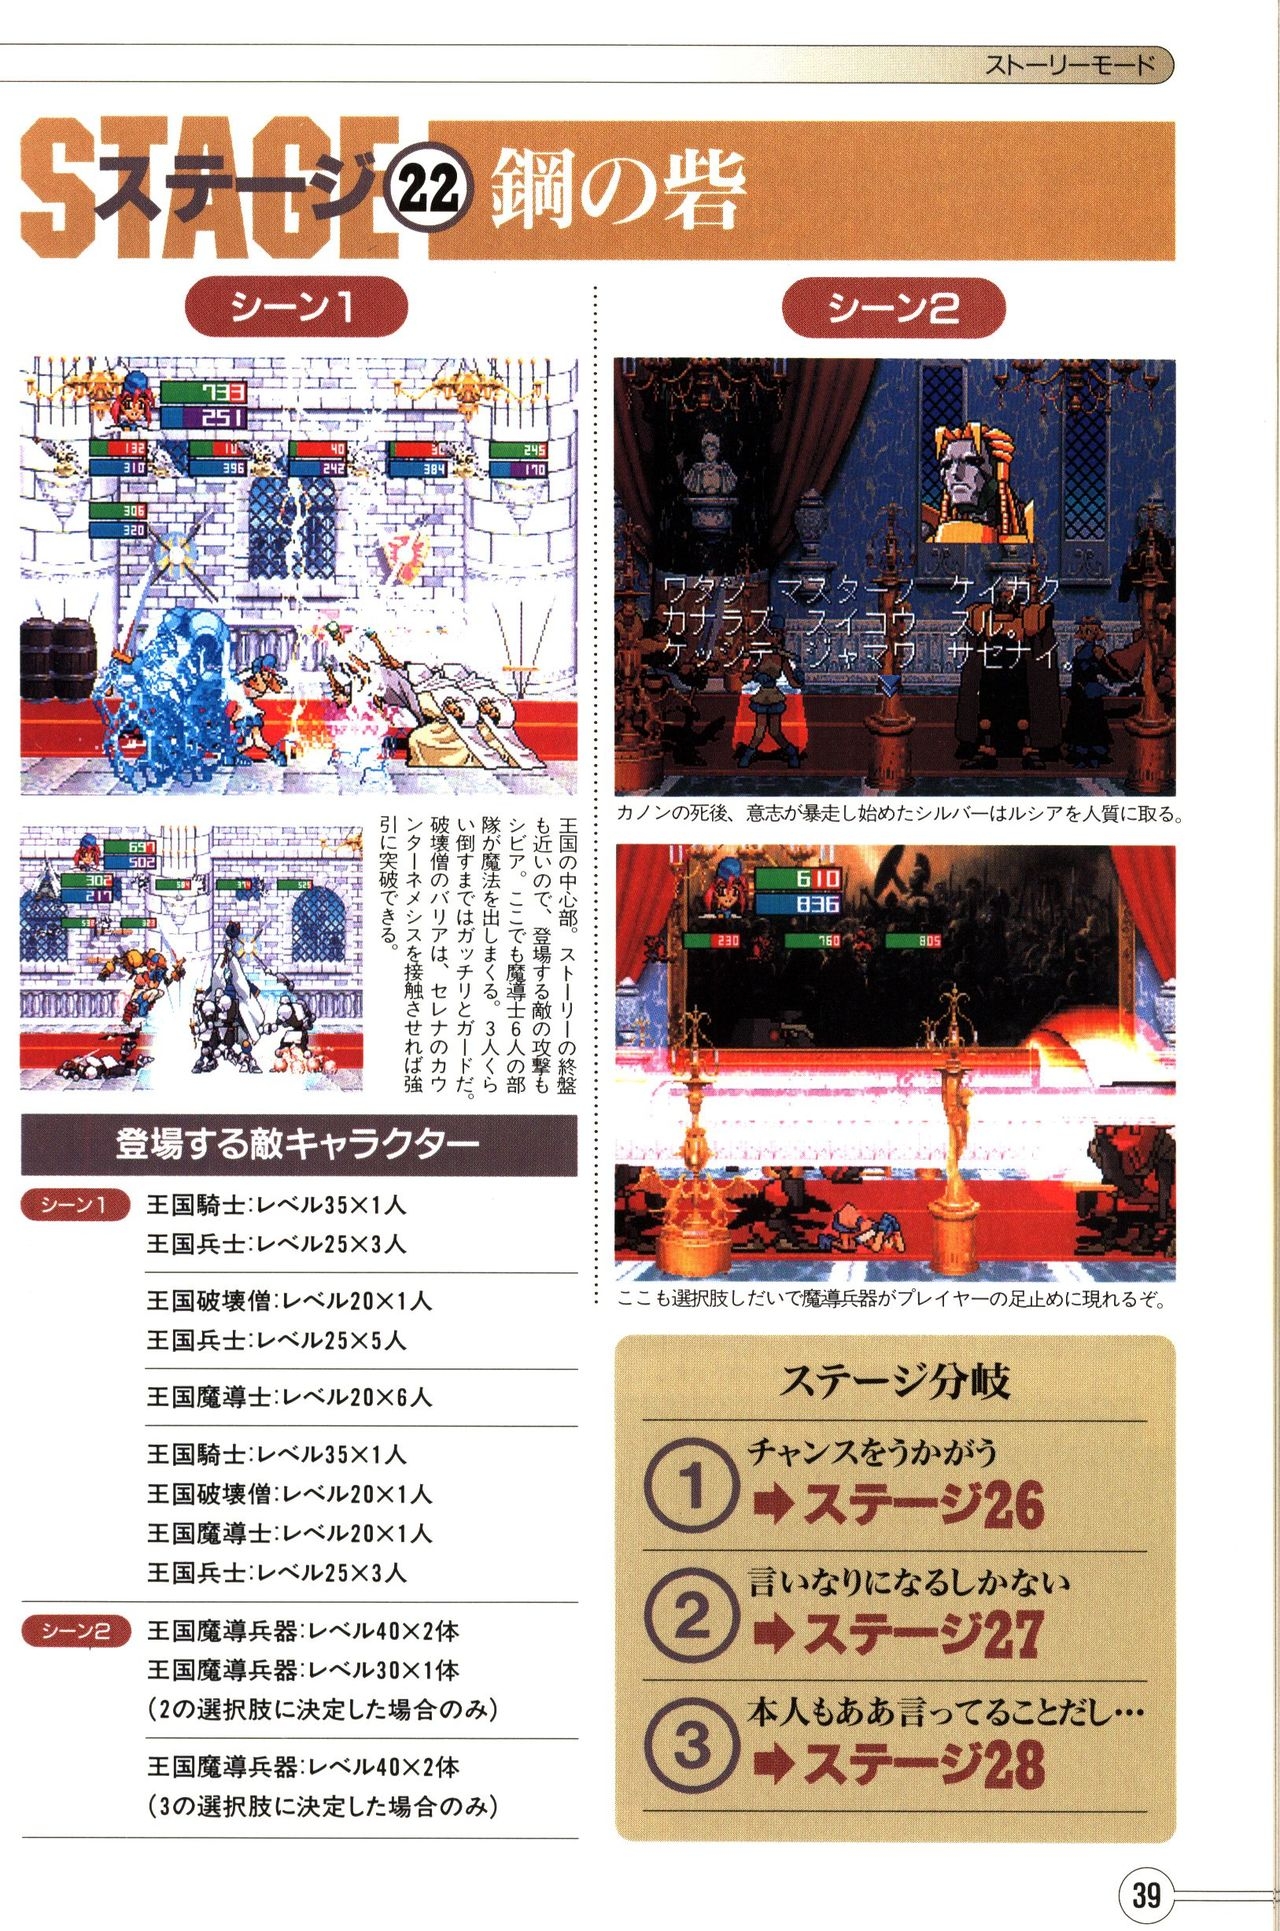 Guardian Heroes Perfect Guide (Sega Saturn magazine books) 41